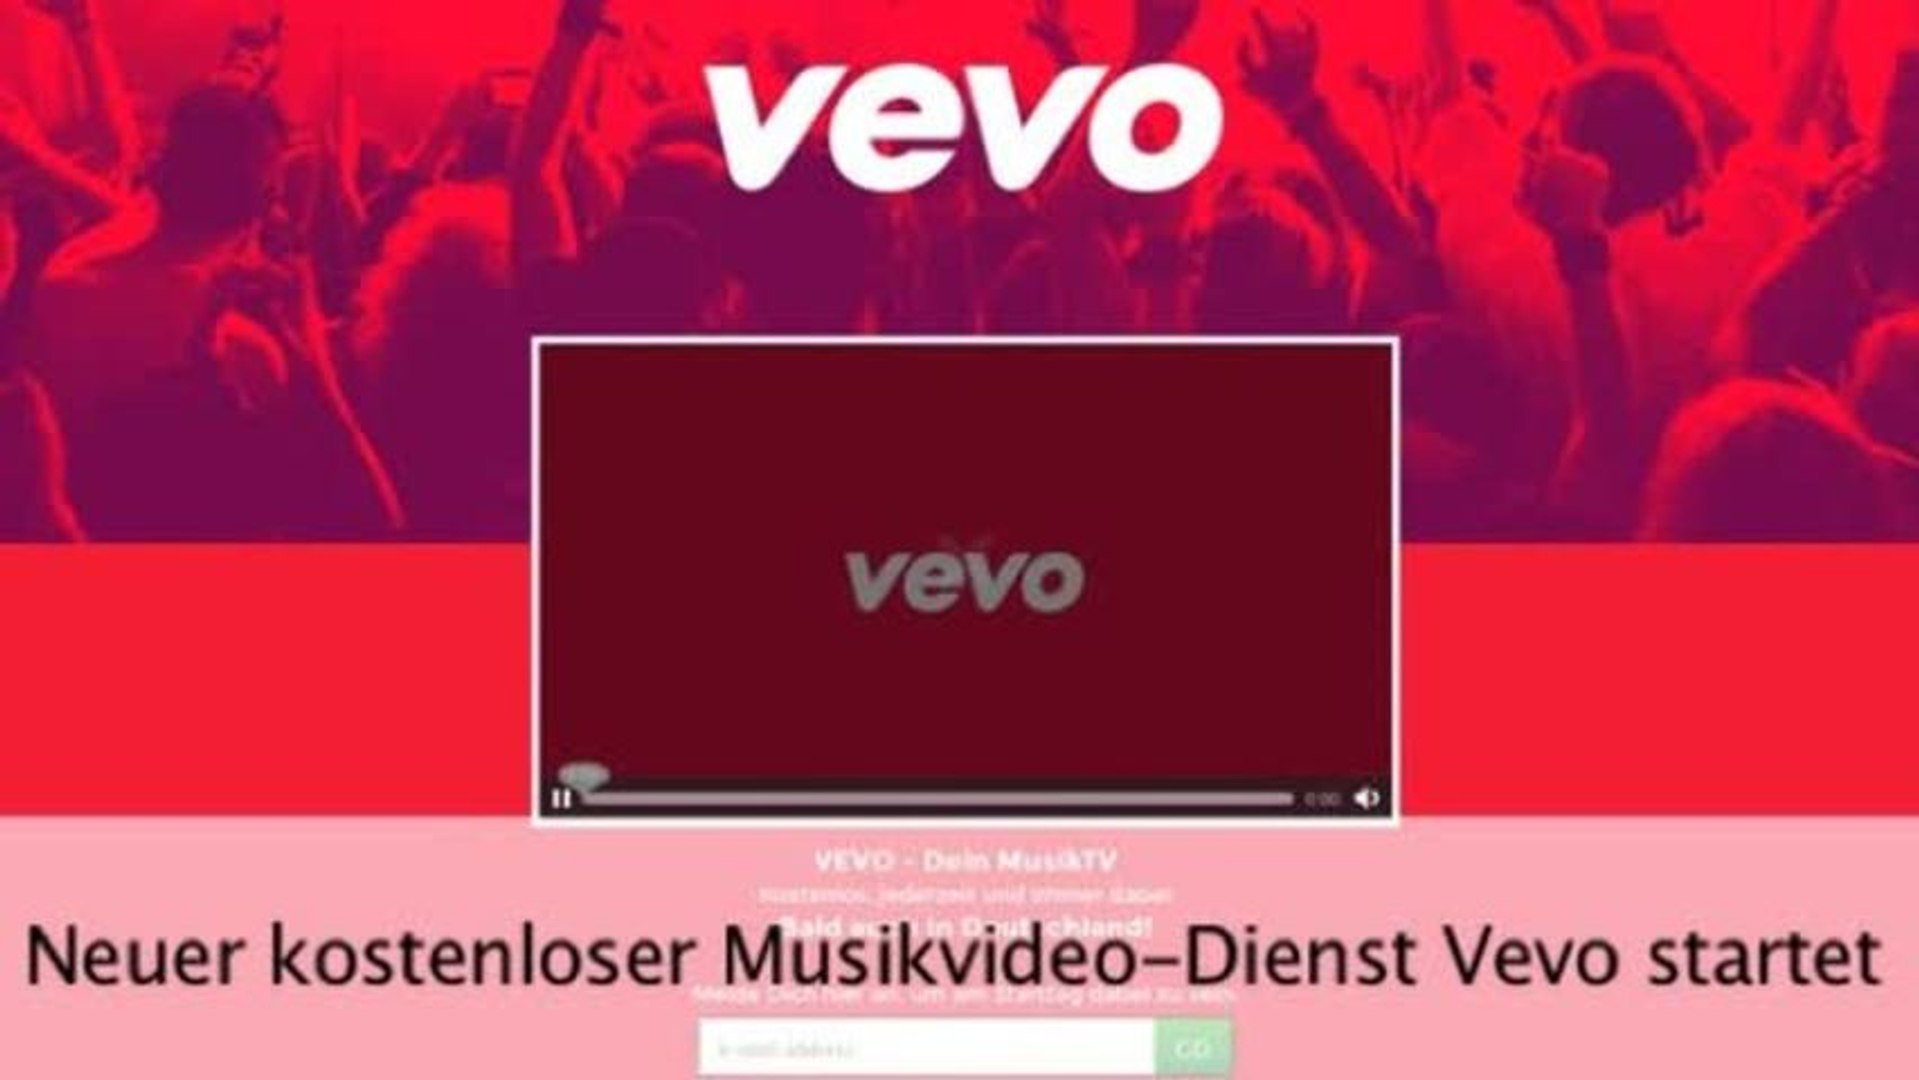 Neuer kostenloser Musikvideo-Dienst Vevo startet